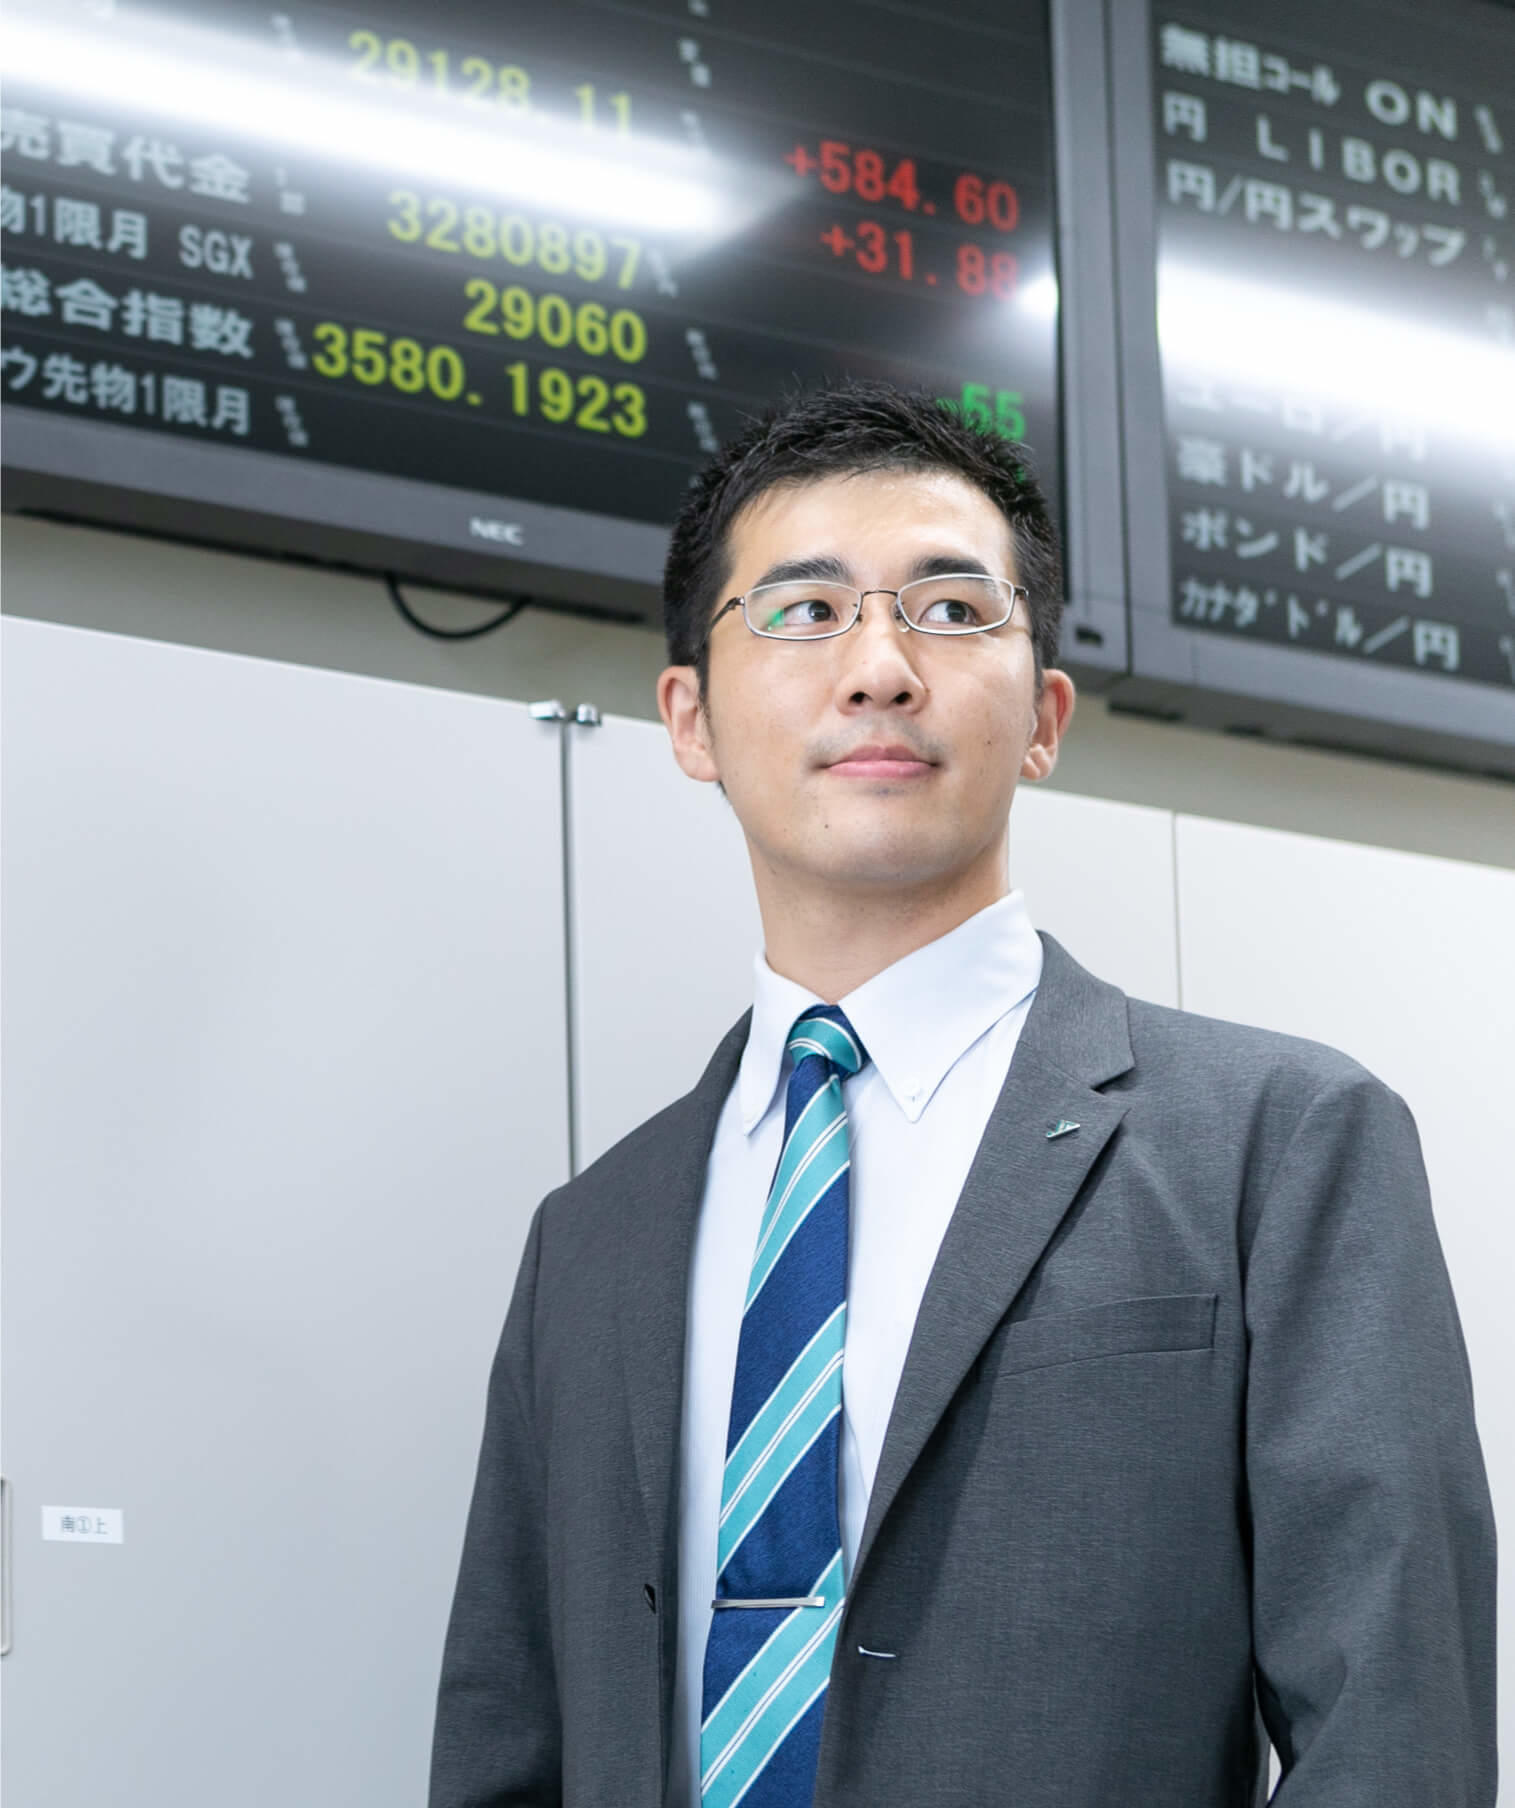 為替レート電光掲示板を背景に立つ長野県信連証券運用の男性職員